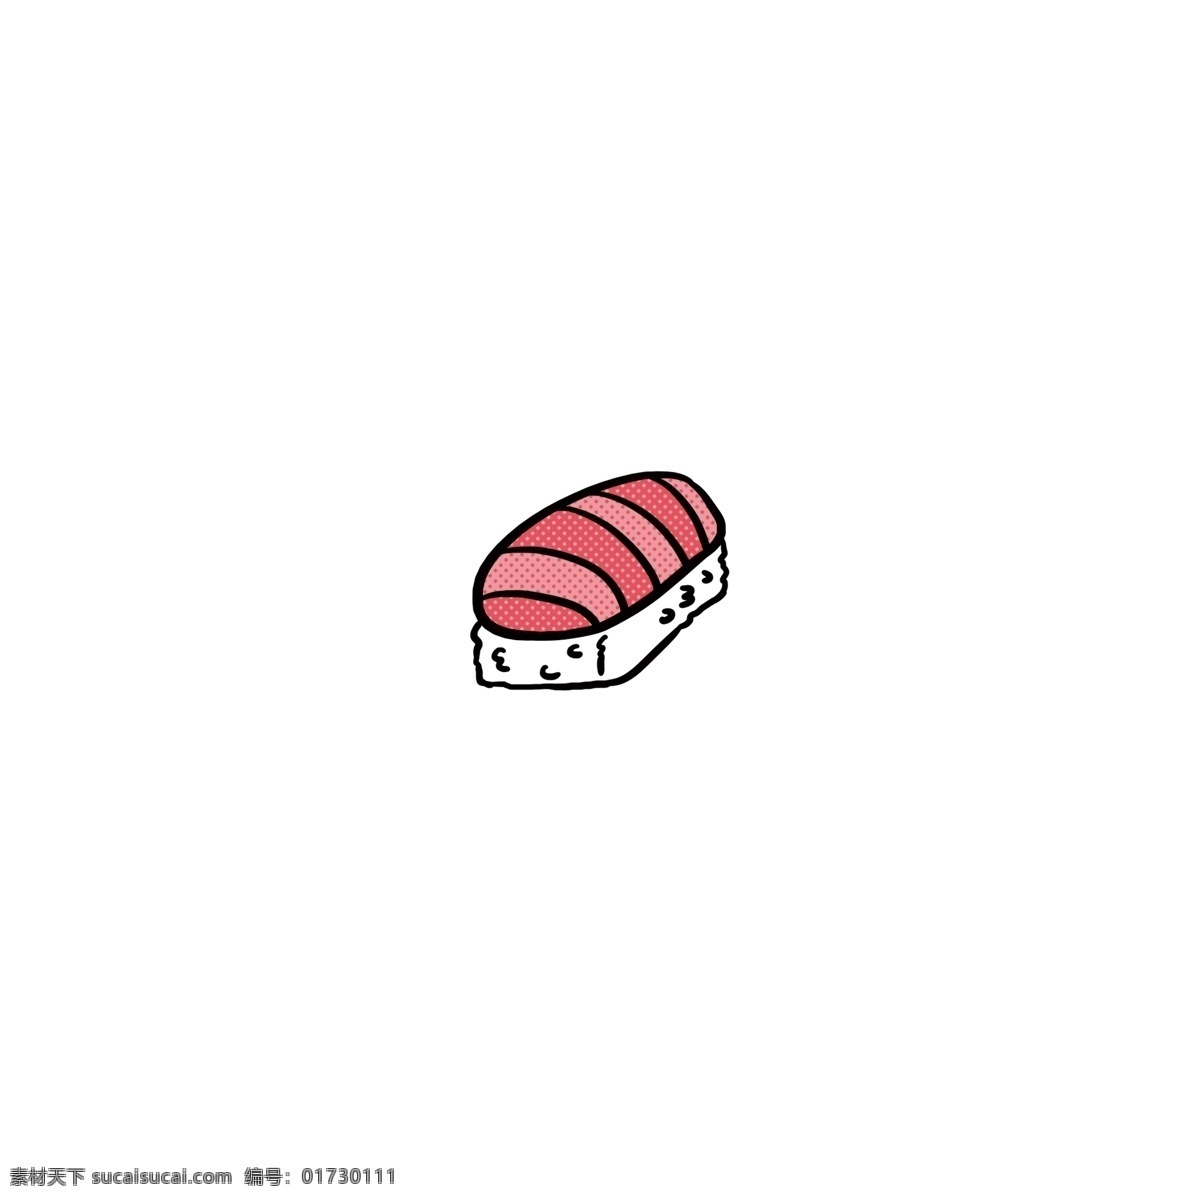 可爱 卡通 夏天 寿司 手绘 食物 图标 元素 餐厅 美食 三文鱼 饭团 日料 设计元素 小吃 茶点 零食